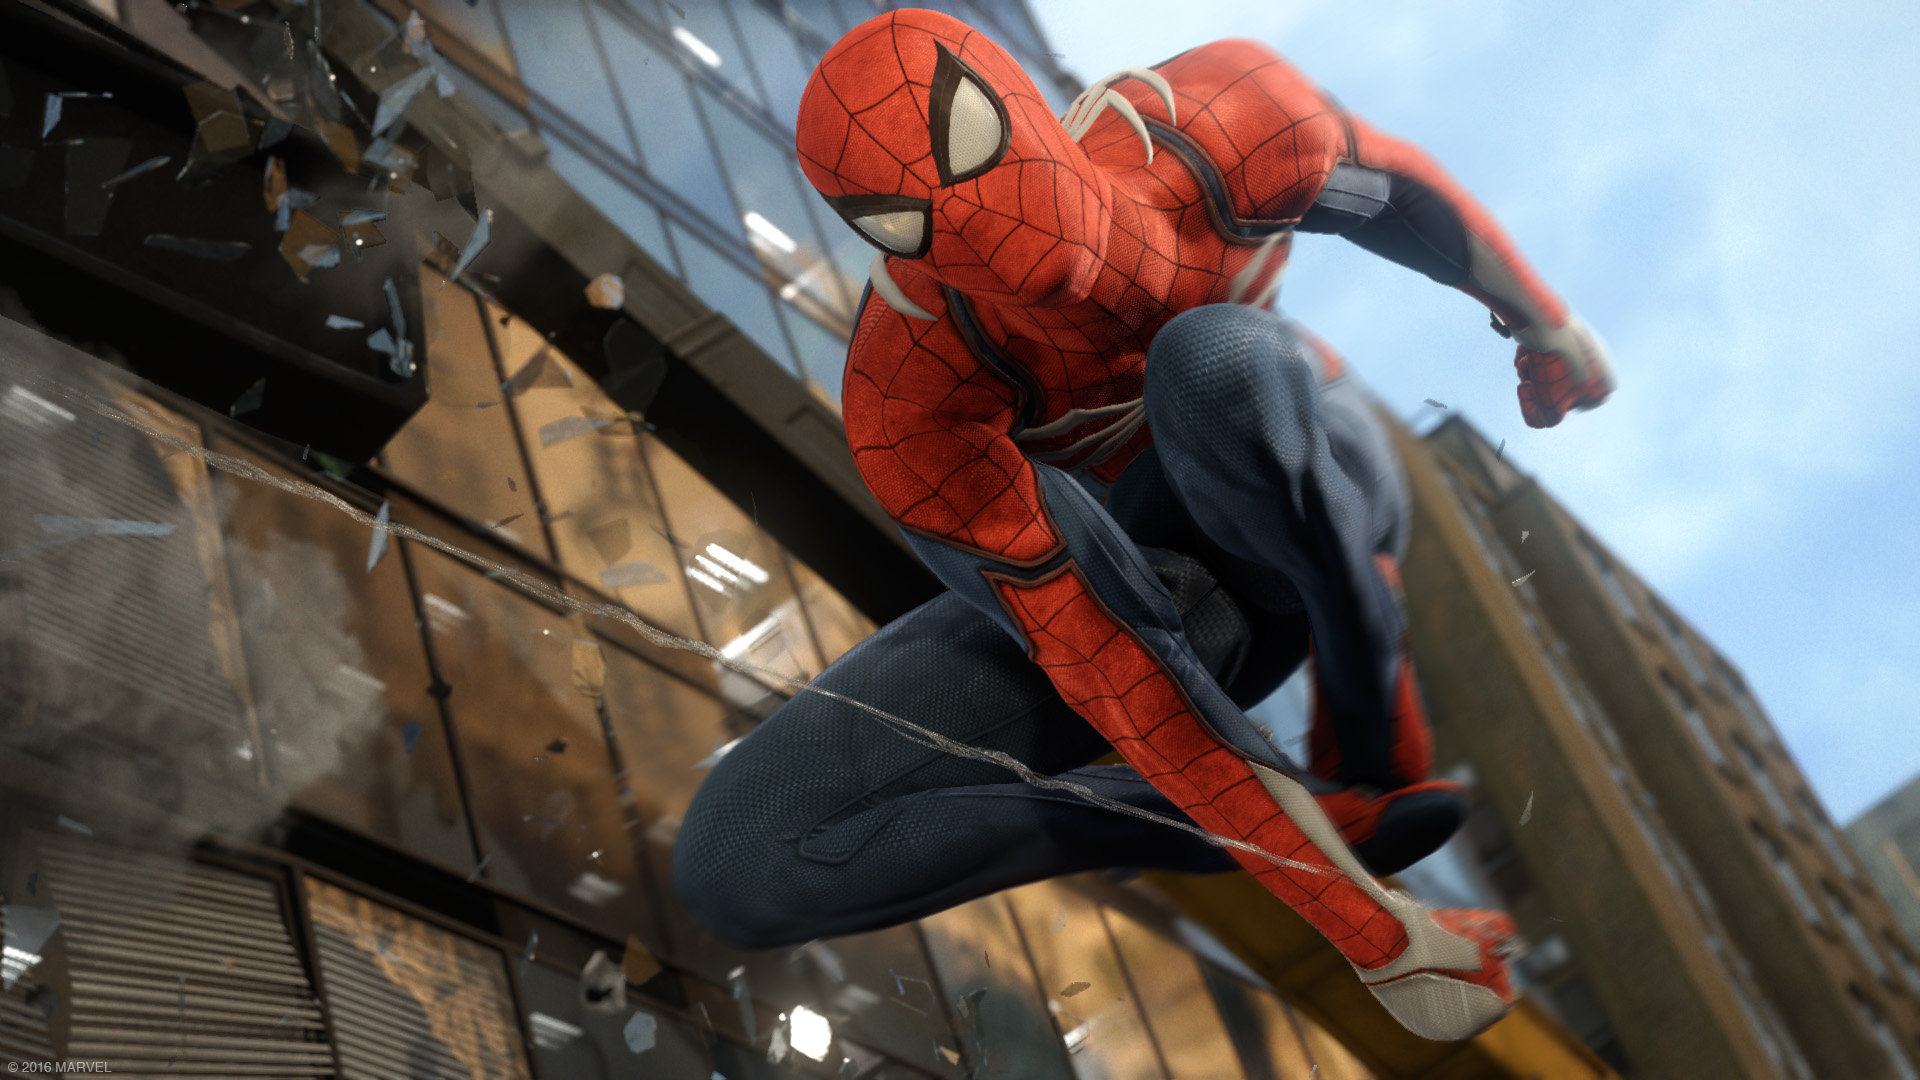 Homem-Aranha, exclusivo de PS4, ganha gameplay e será lançado em 2018